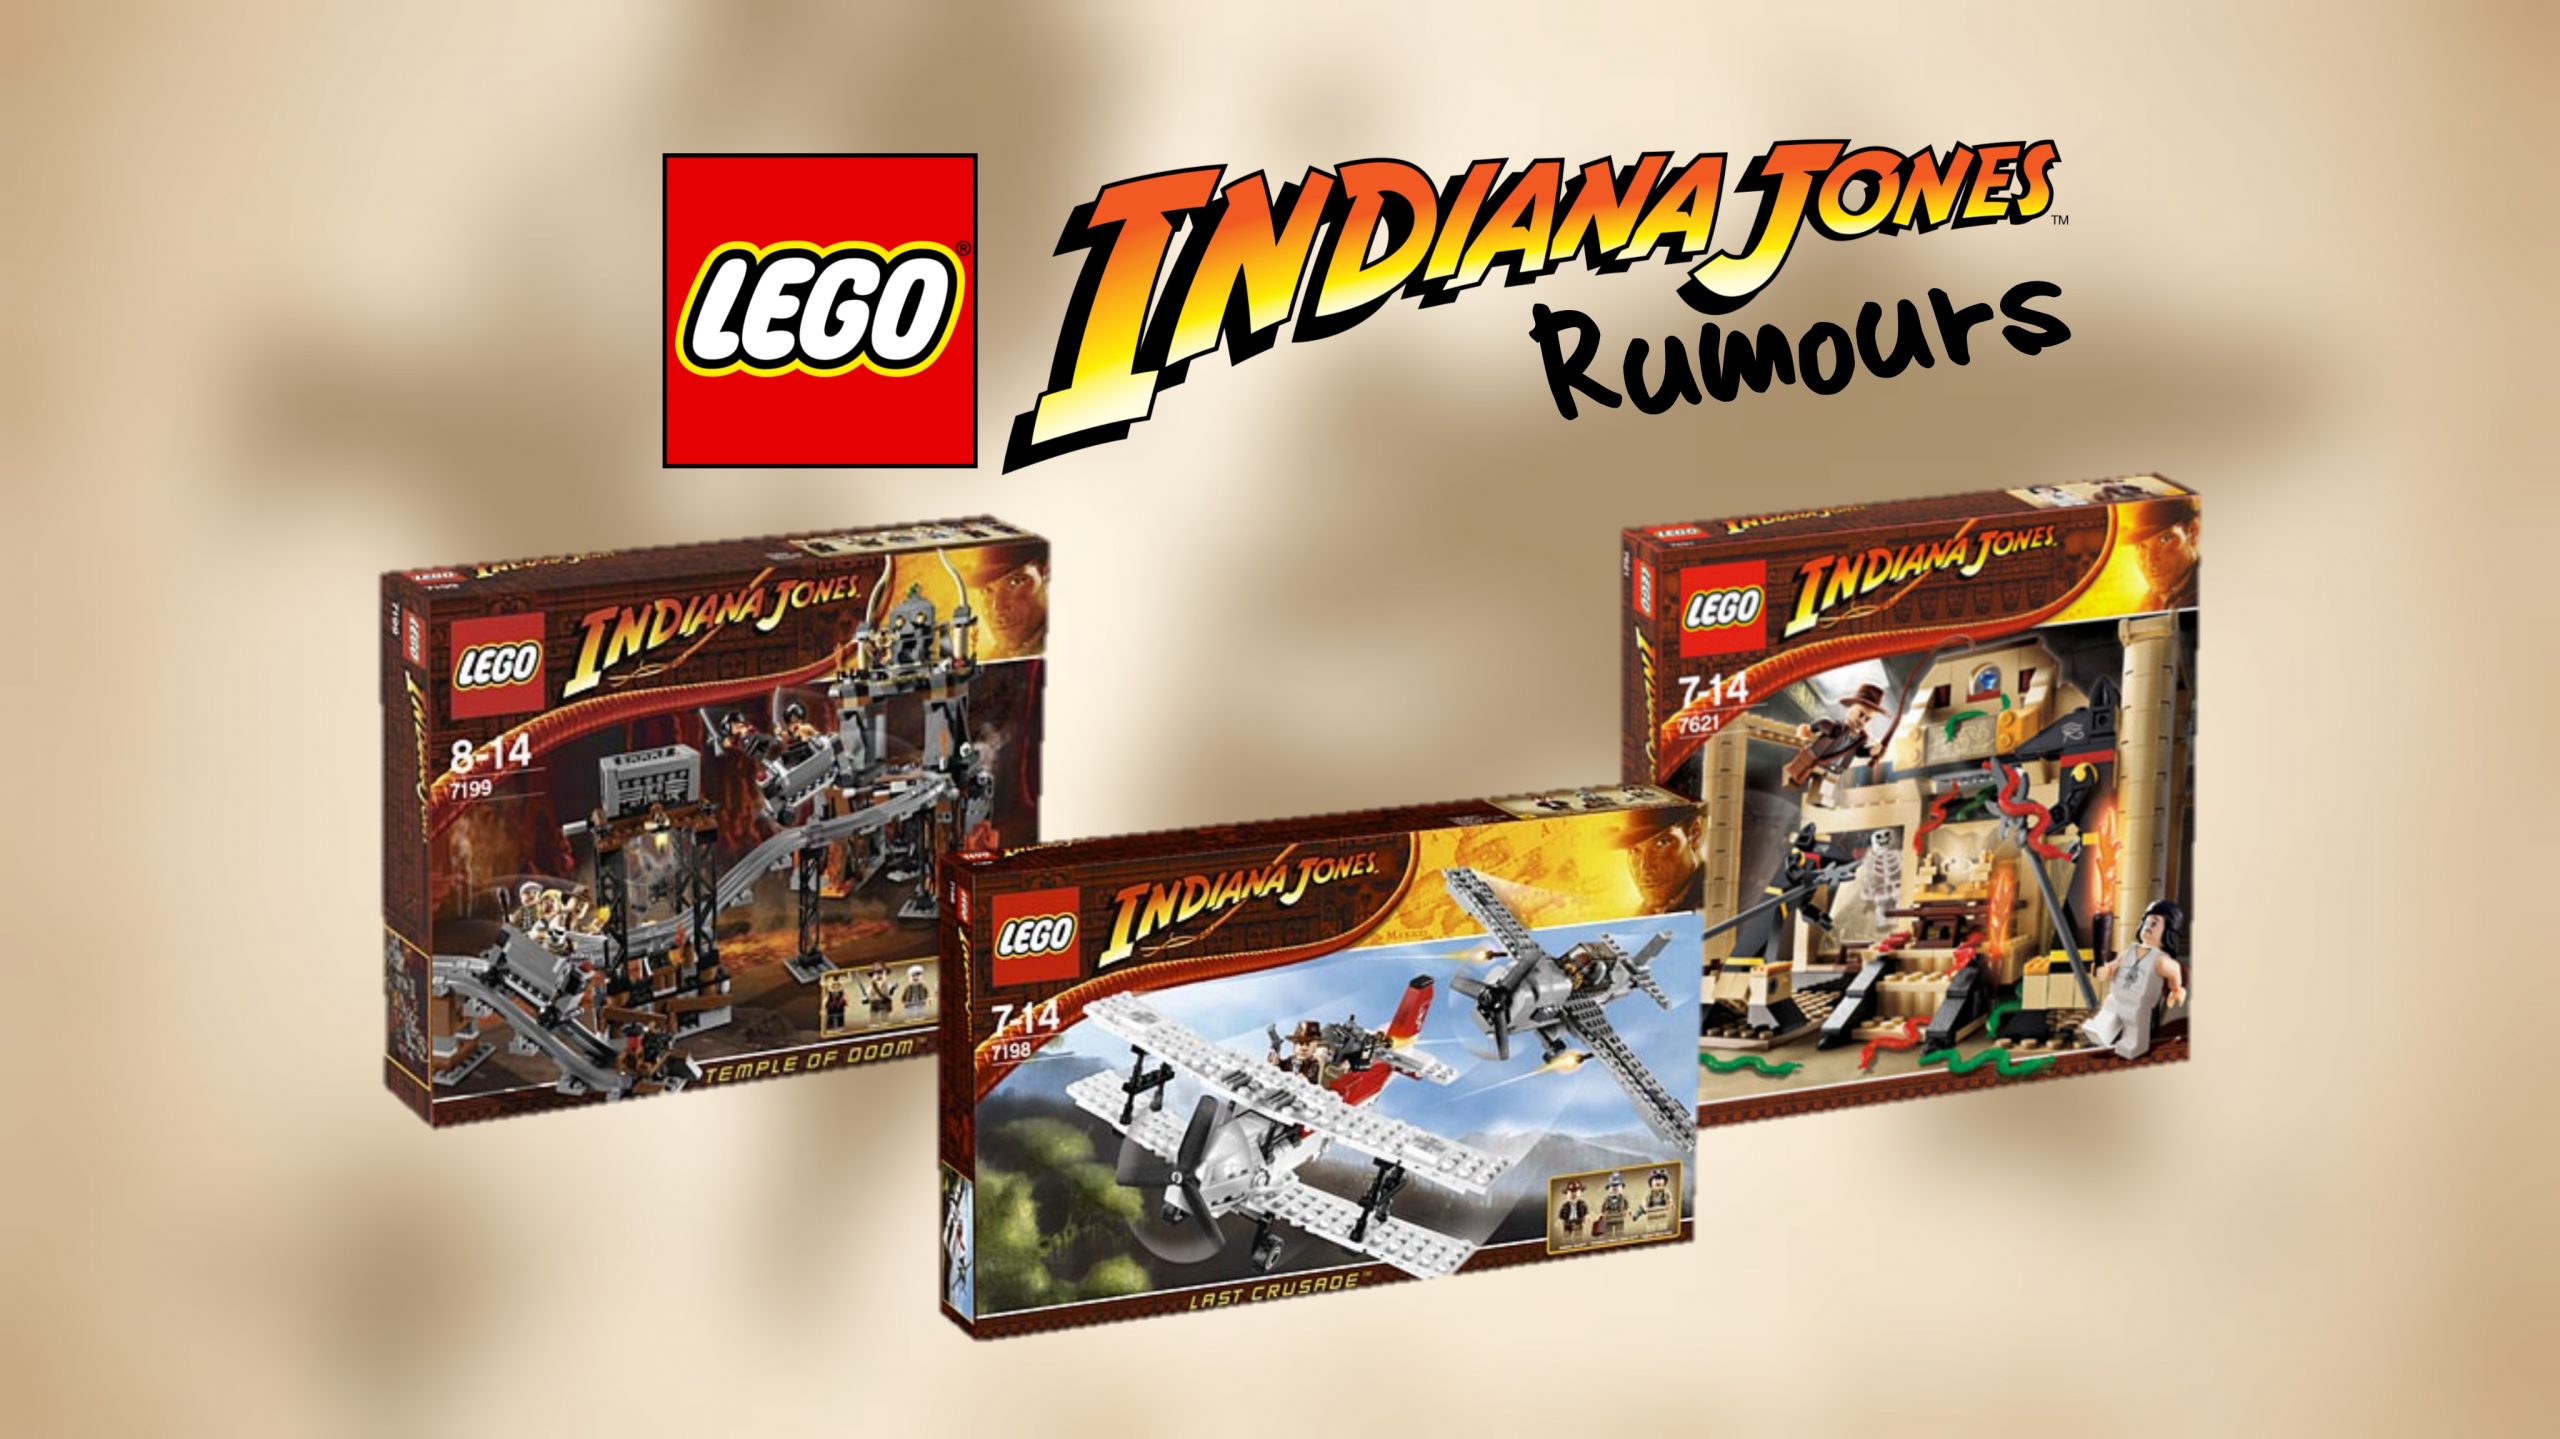 Temple Of Doom Lego Set